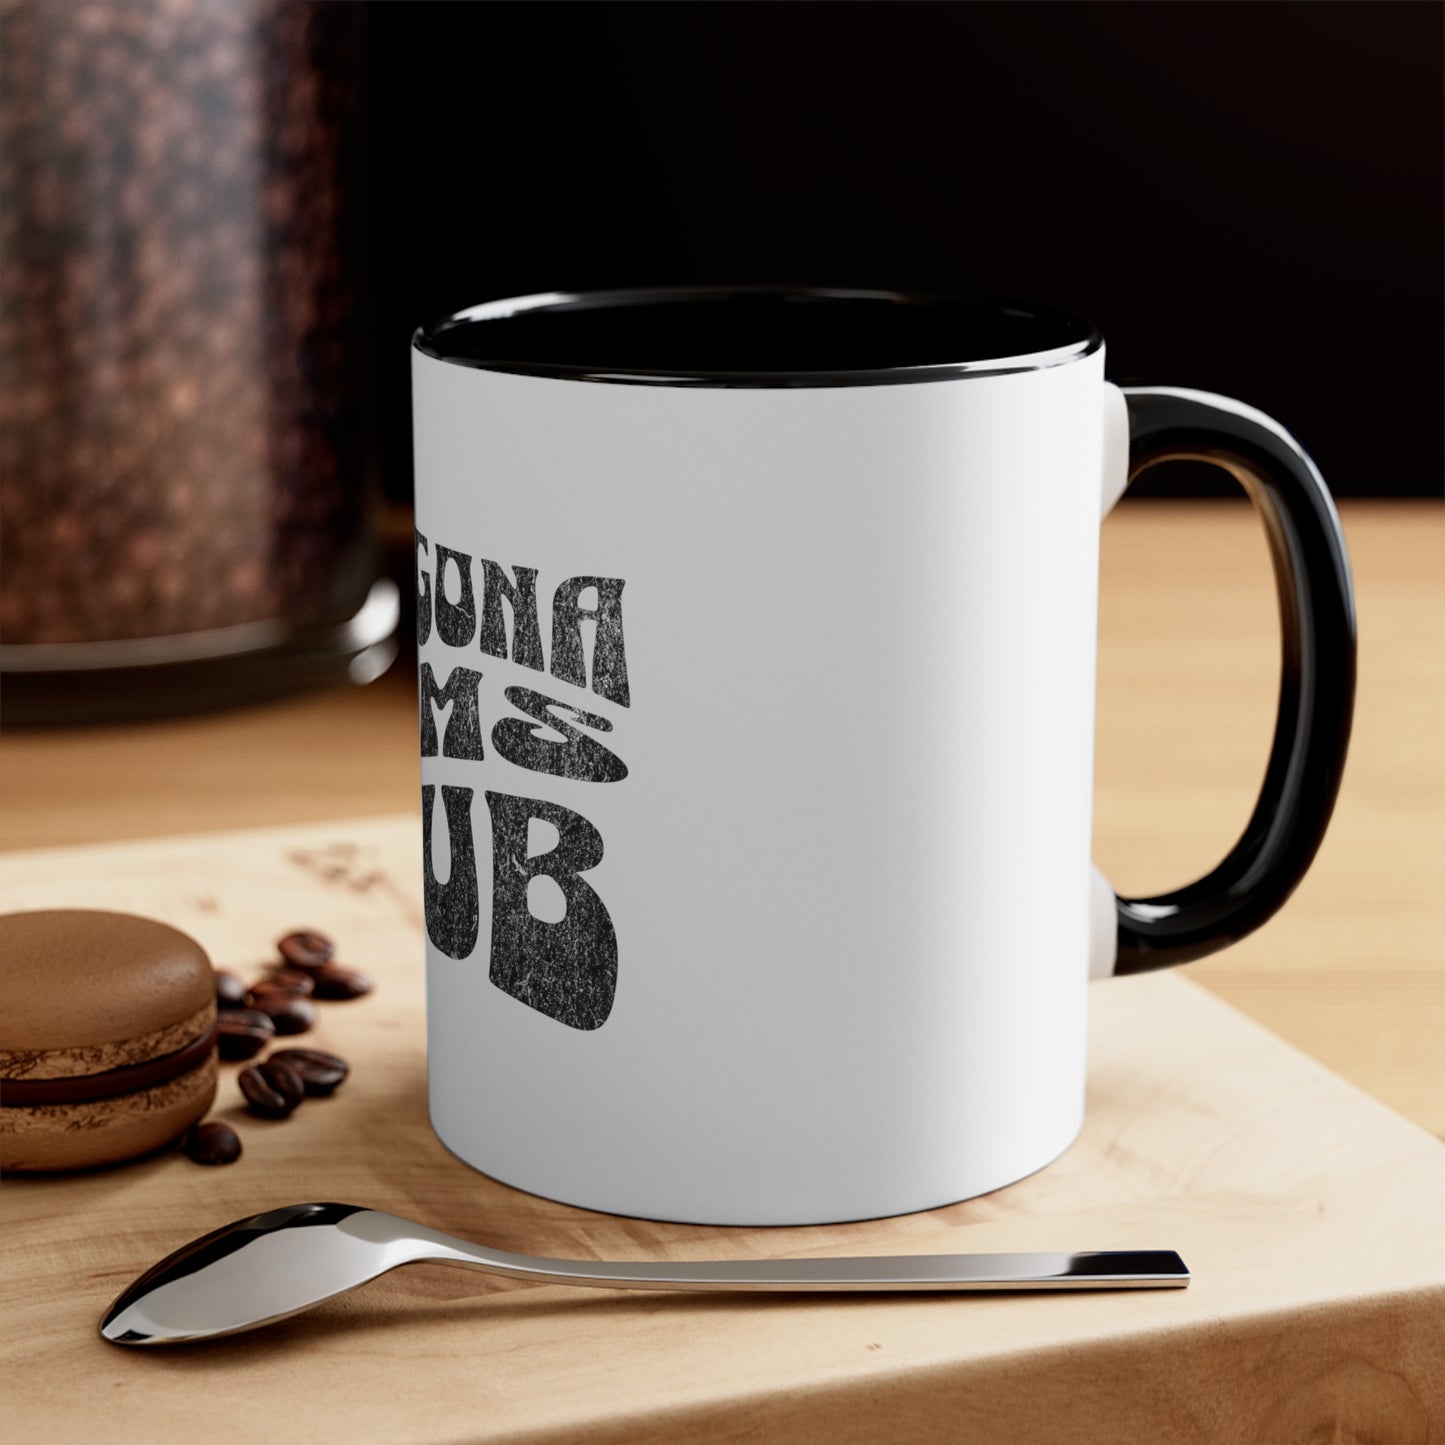 Chingona Moms Club - Accent Coffee Mug, 11oz